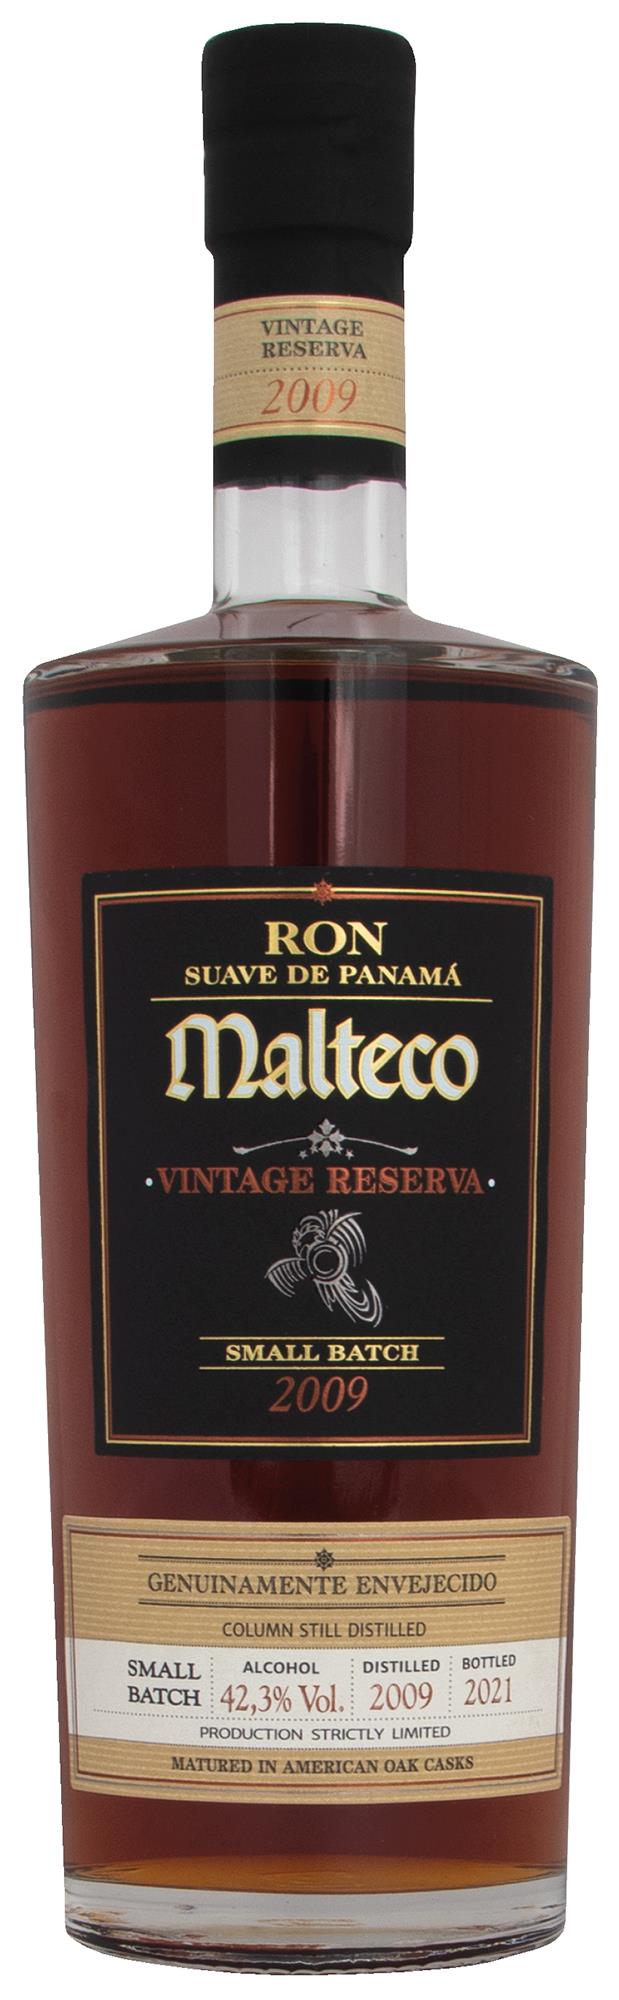 2009 MALTECO VINTAGE RESERVA 40% SAVIO S.R.L. RUM (70CL)